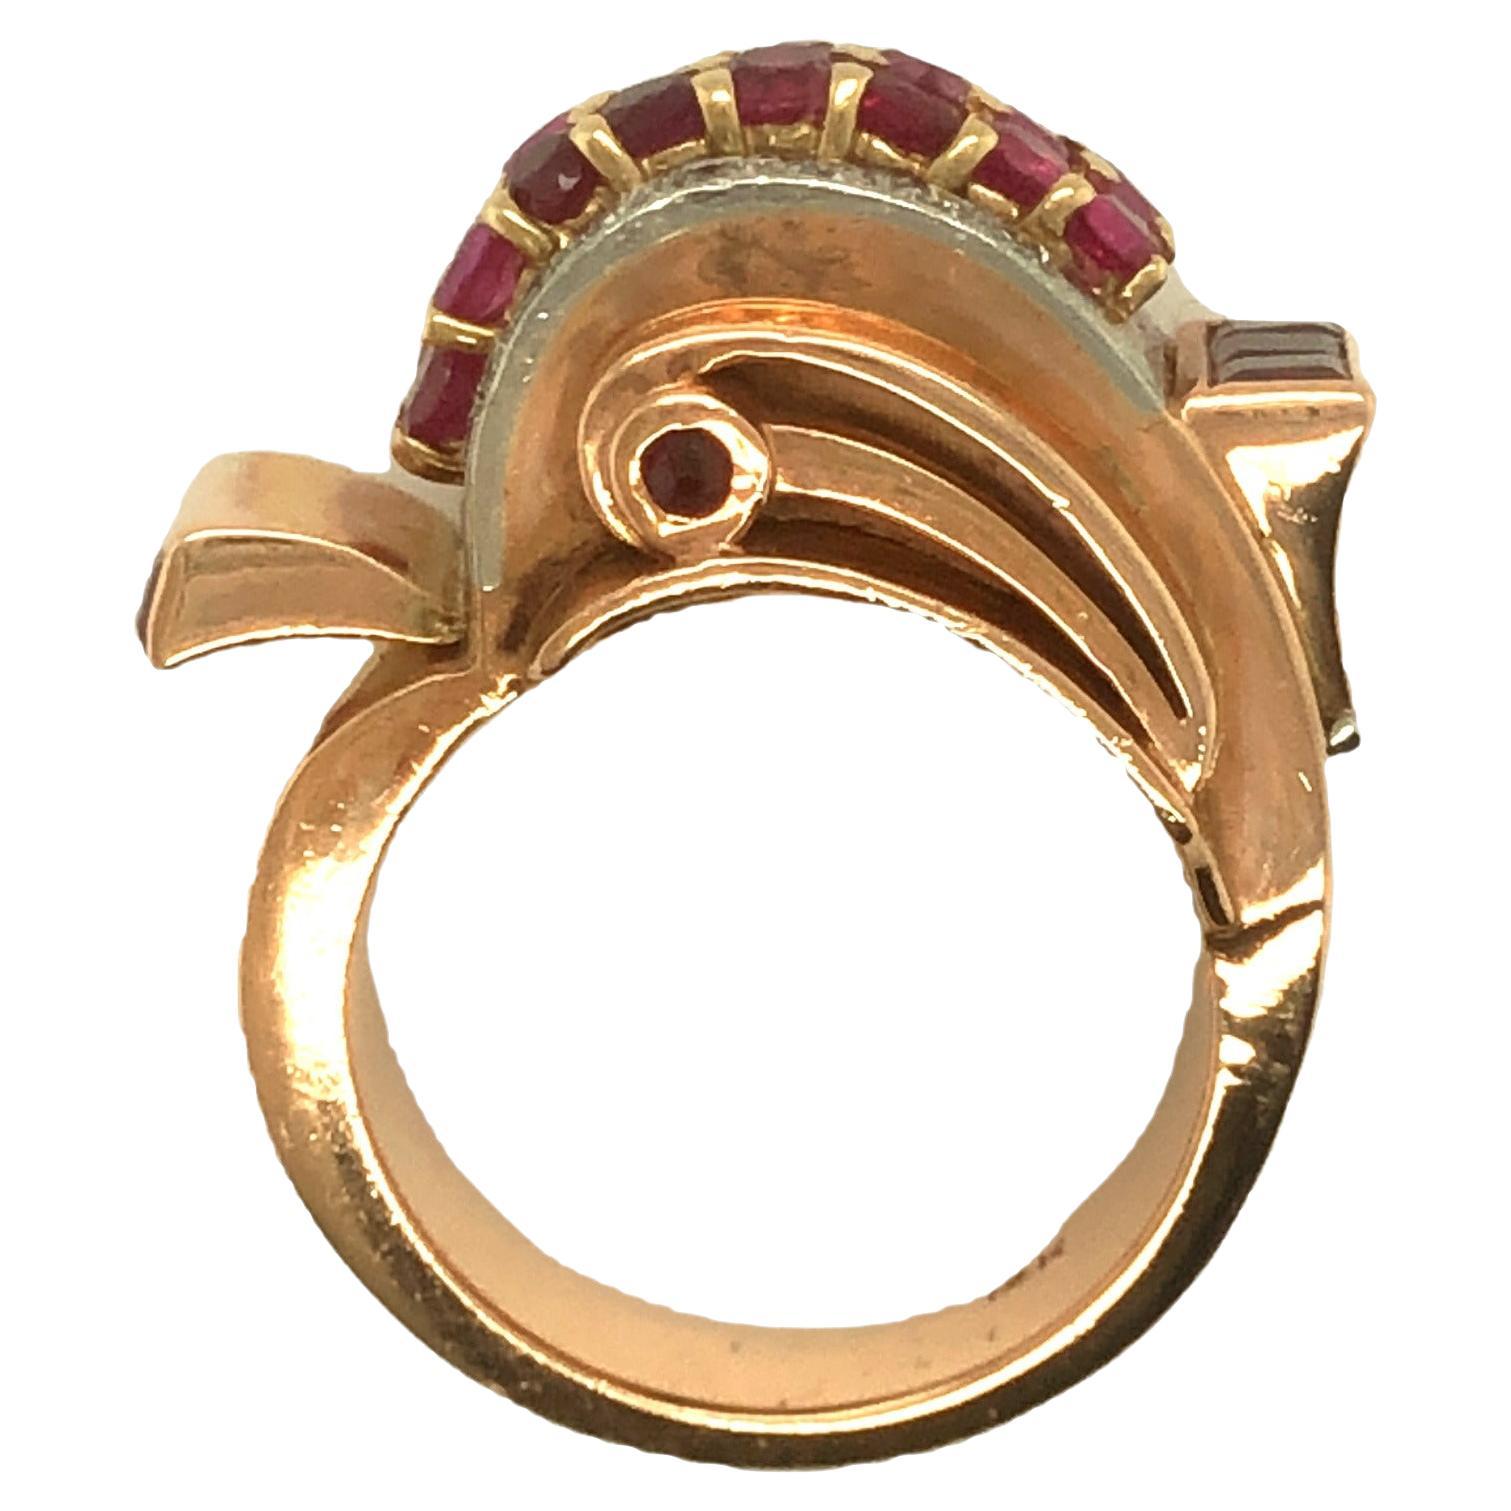 Dieser wunderschöne und gewagte Retro-Ring aus den 1940er Jahren wurde in 14-karätigem Roségold entworfen und gefertigt. In der Mitte befinden sich zwei Reihen mit runden Rubinen. Die farblose Diamantfassung ist in Weißgold gefasst, um das Weiß des